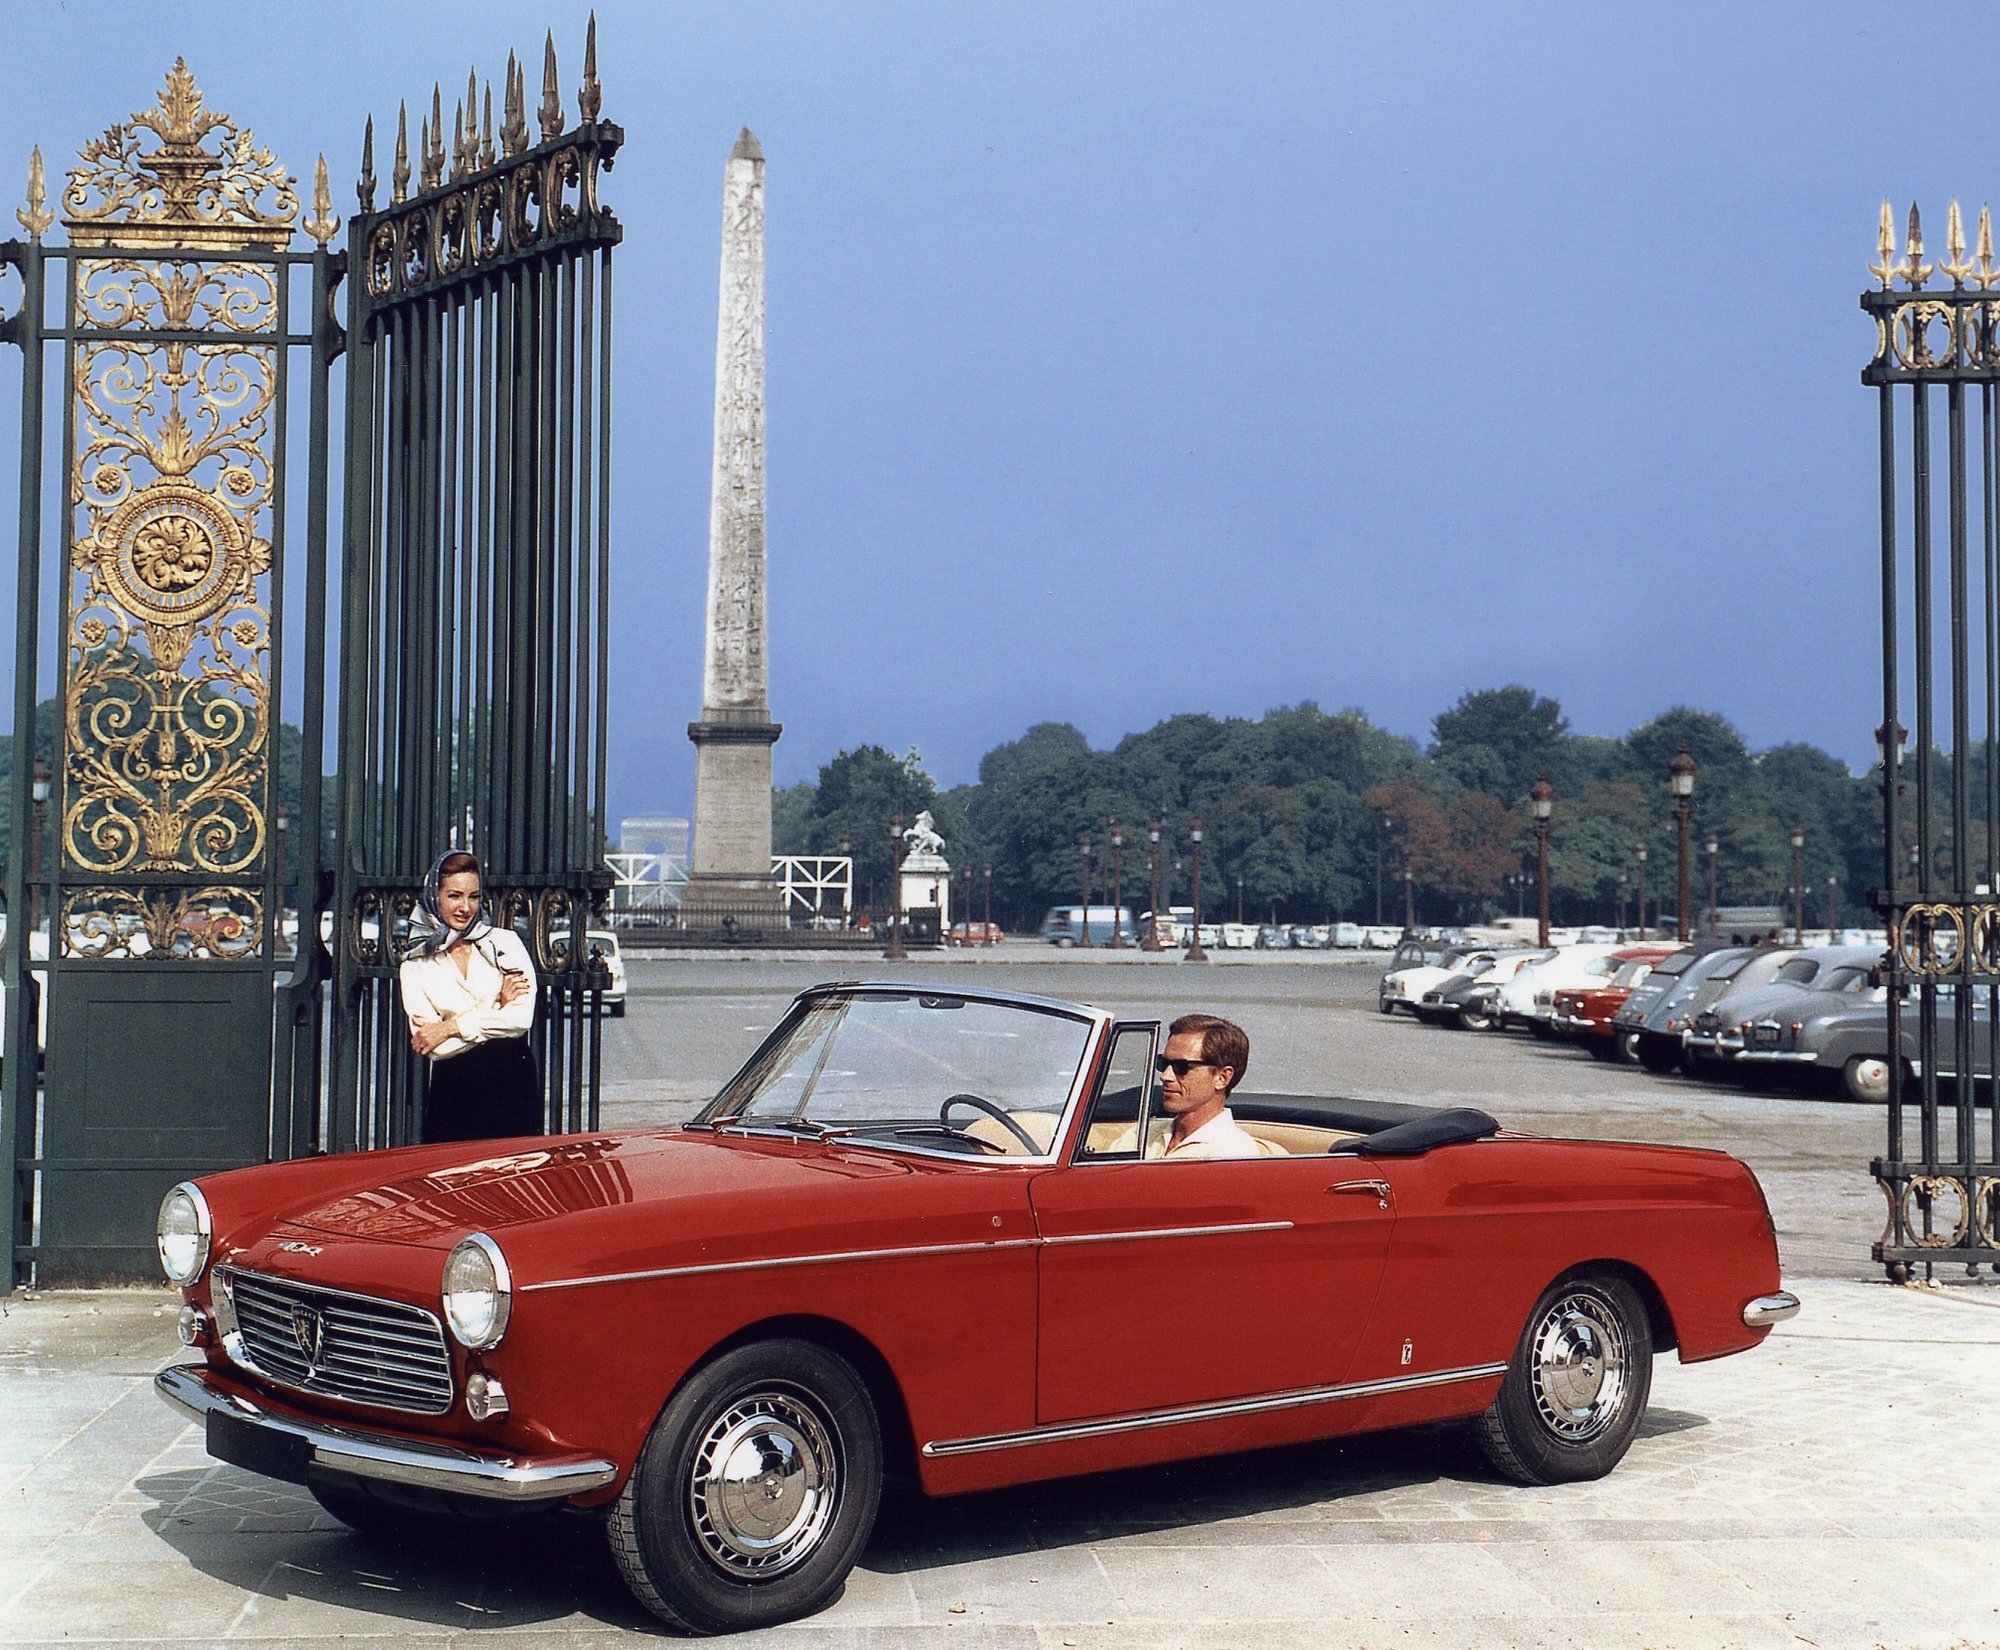 Peugeot 404 z roku 1960 proslul oblými tvary, které vytvořilo studio Pininfarina